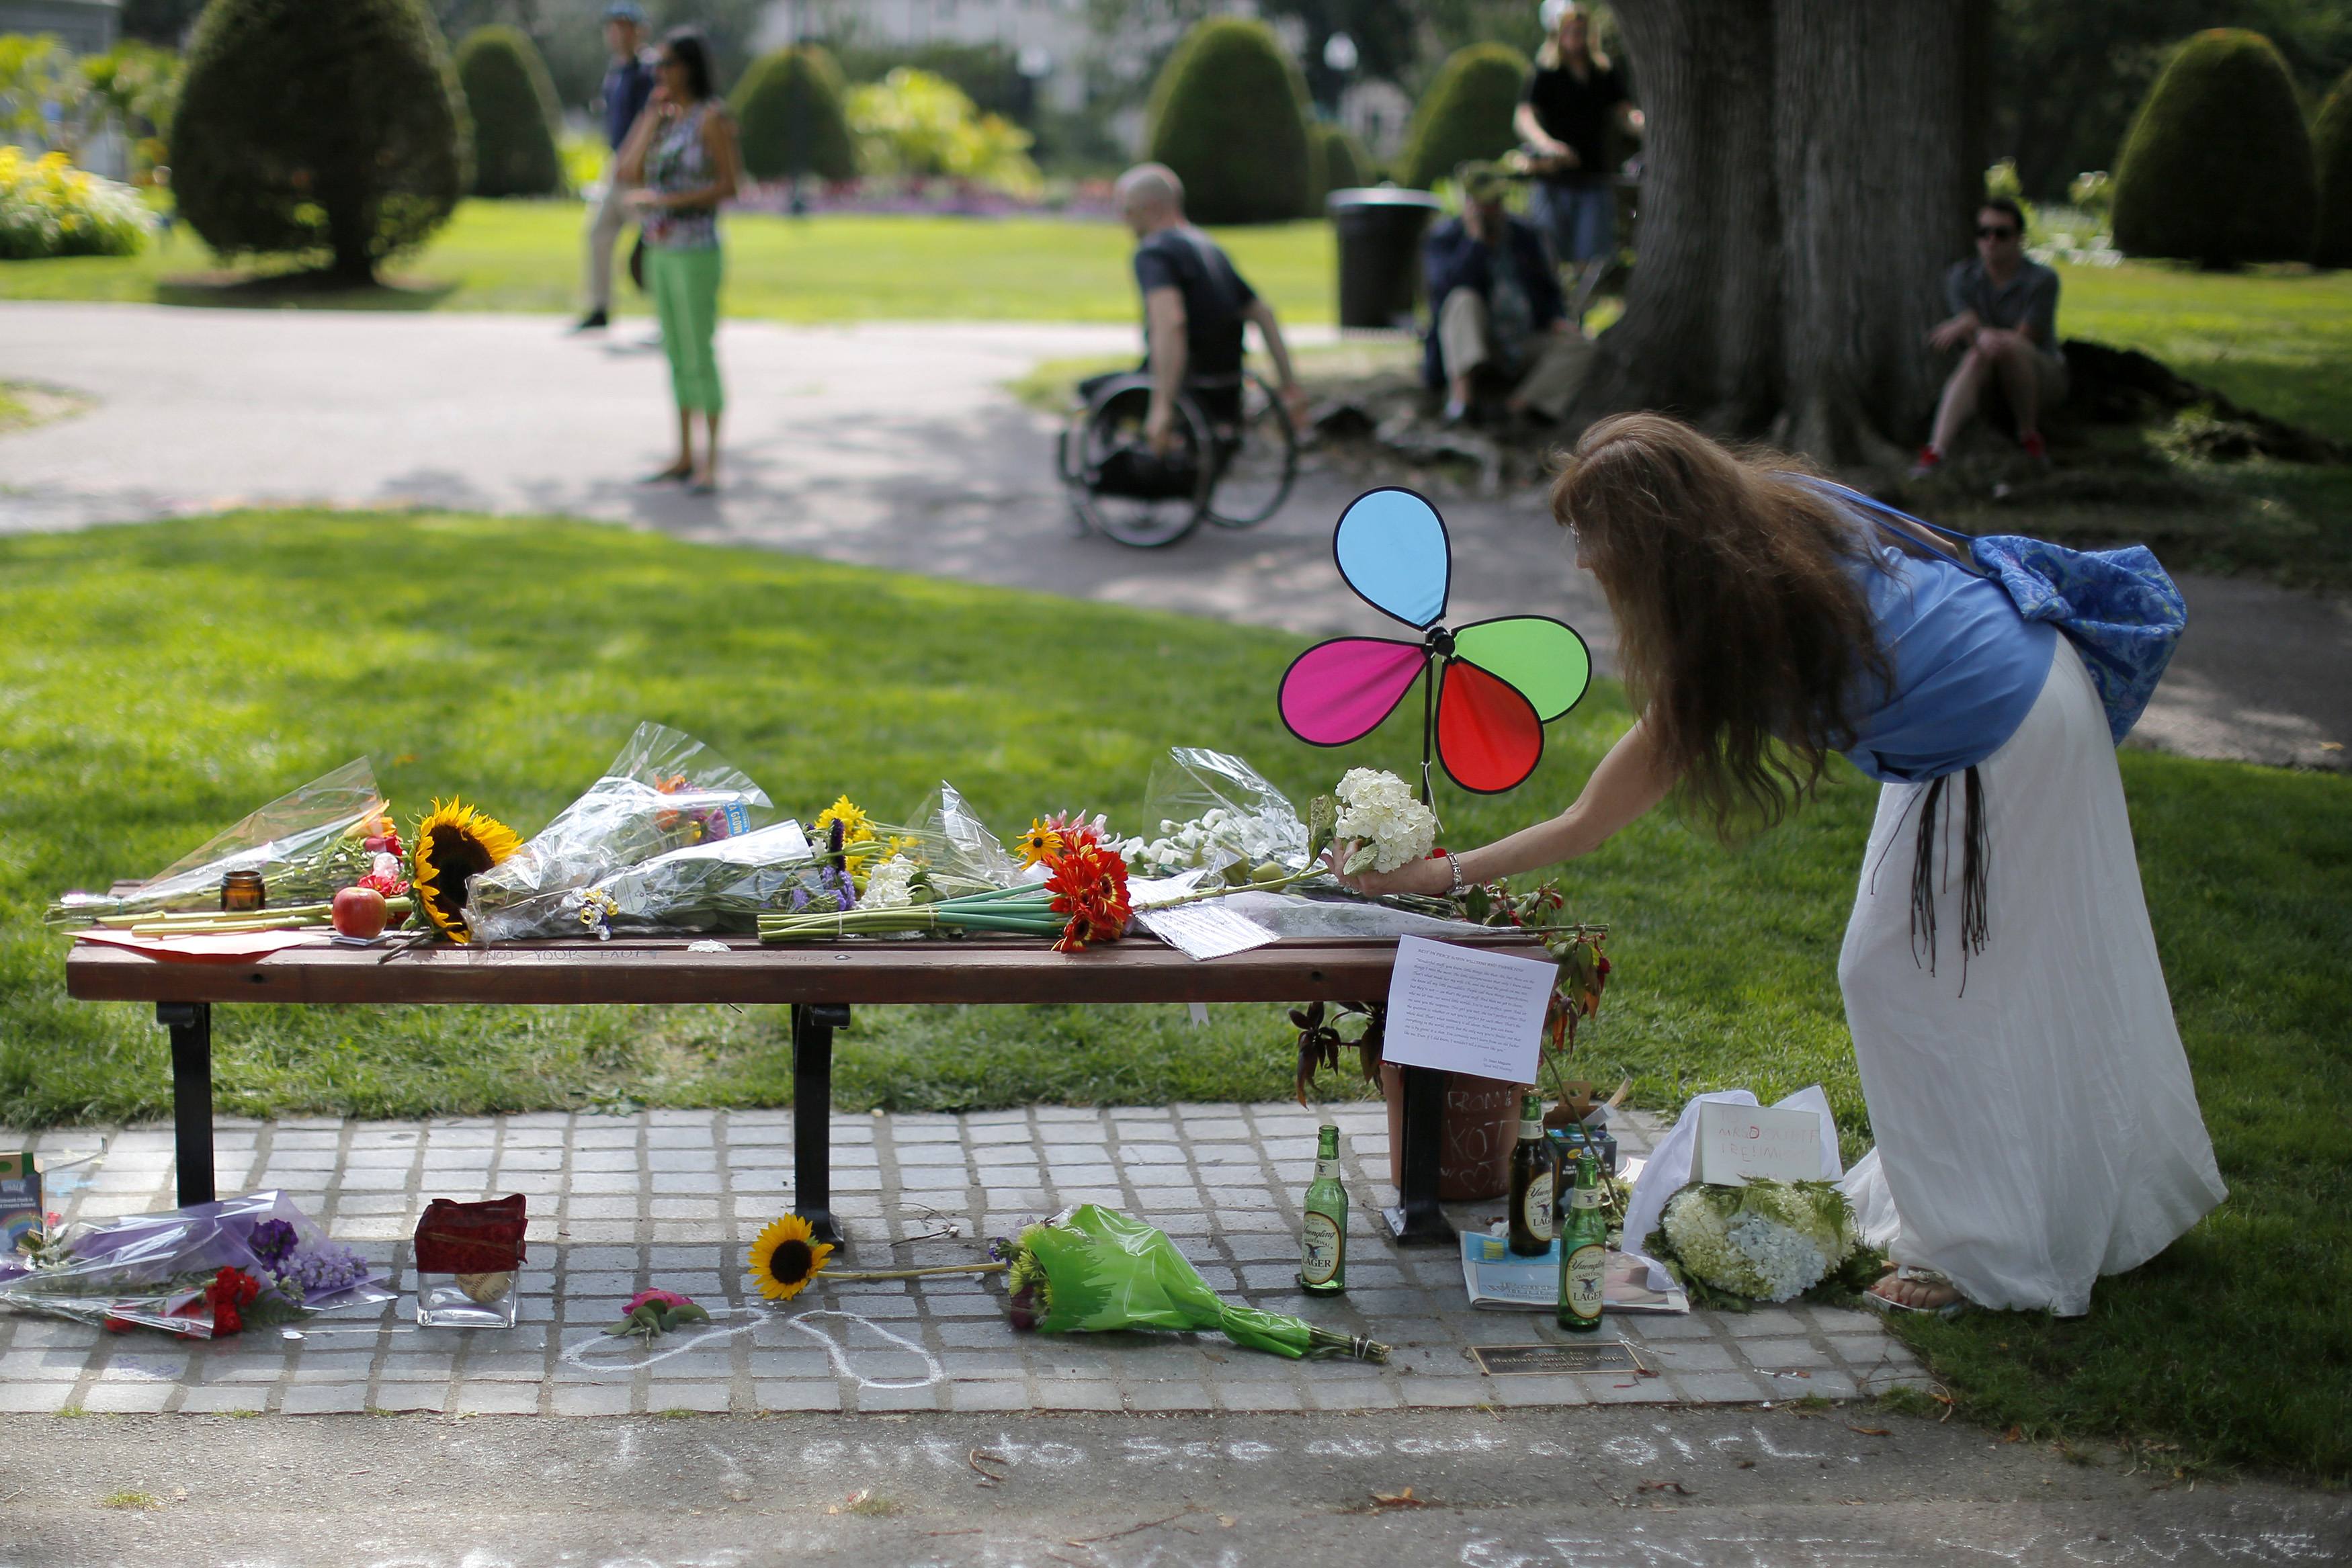 Γεμάτο λουλούδια το παγκάκι που γυρίστηκαν σκηνές από την ταινία "Ο Ξεχωριστός Γουίλ Χάντινγκ"